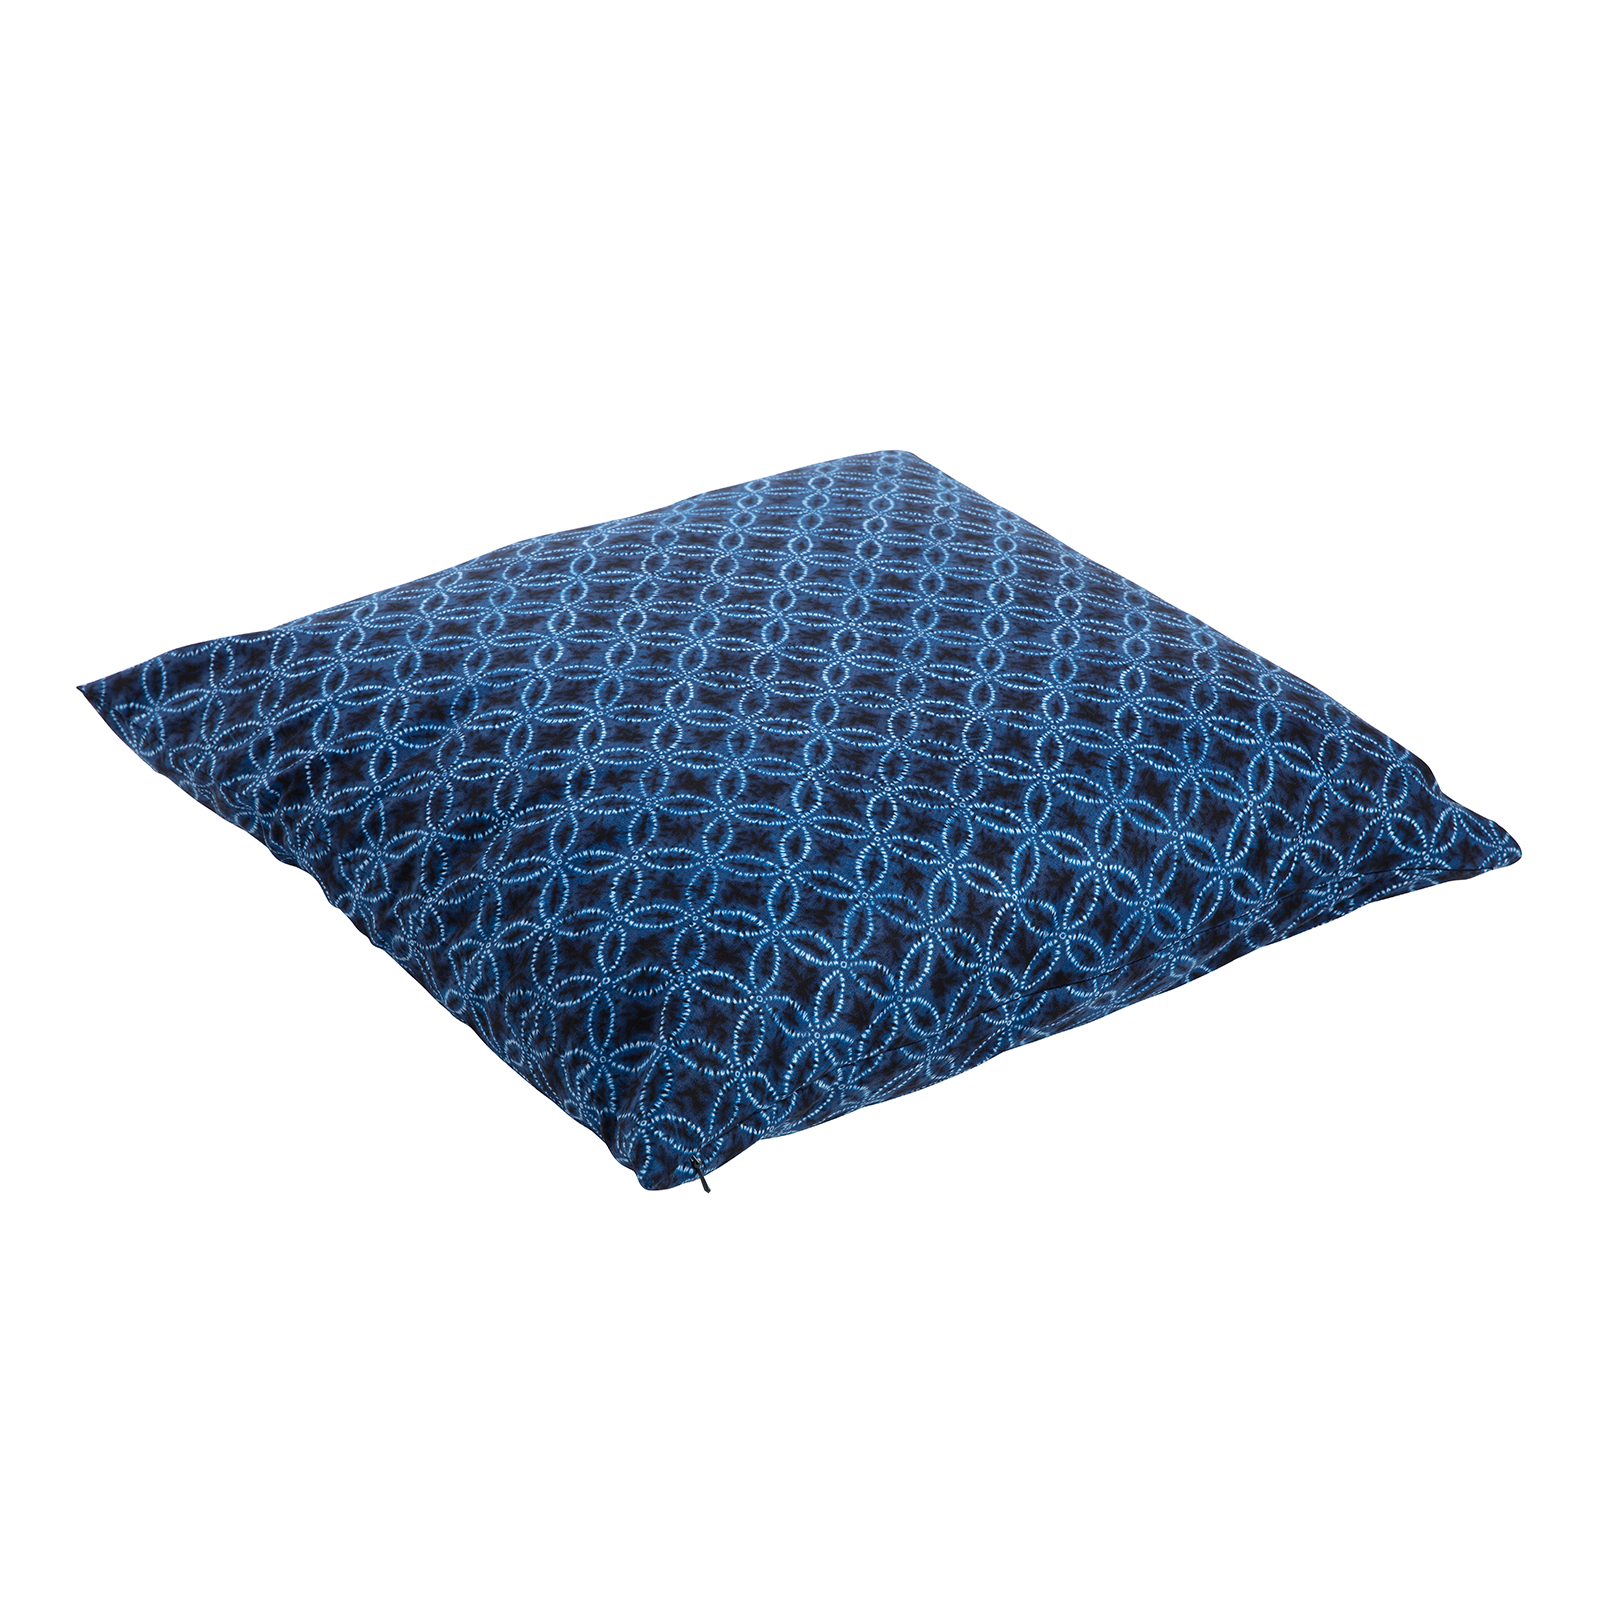 J-Life Taidai Navy Zabuton Floor Pillow